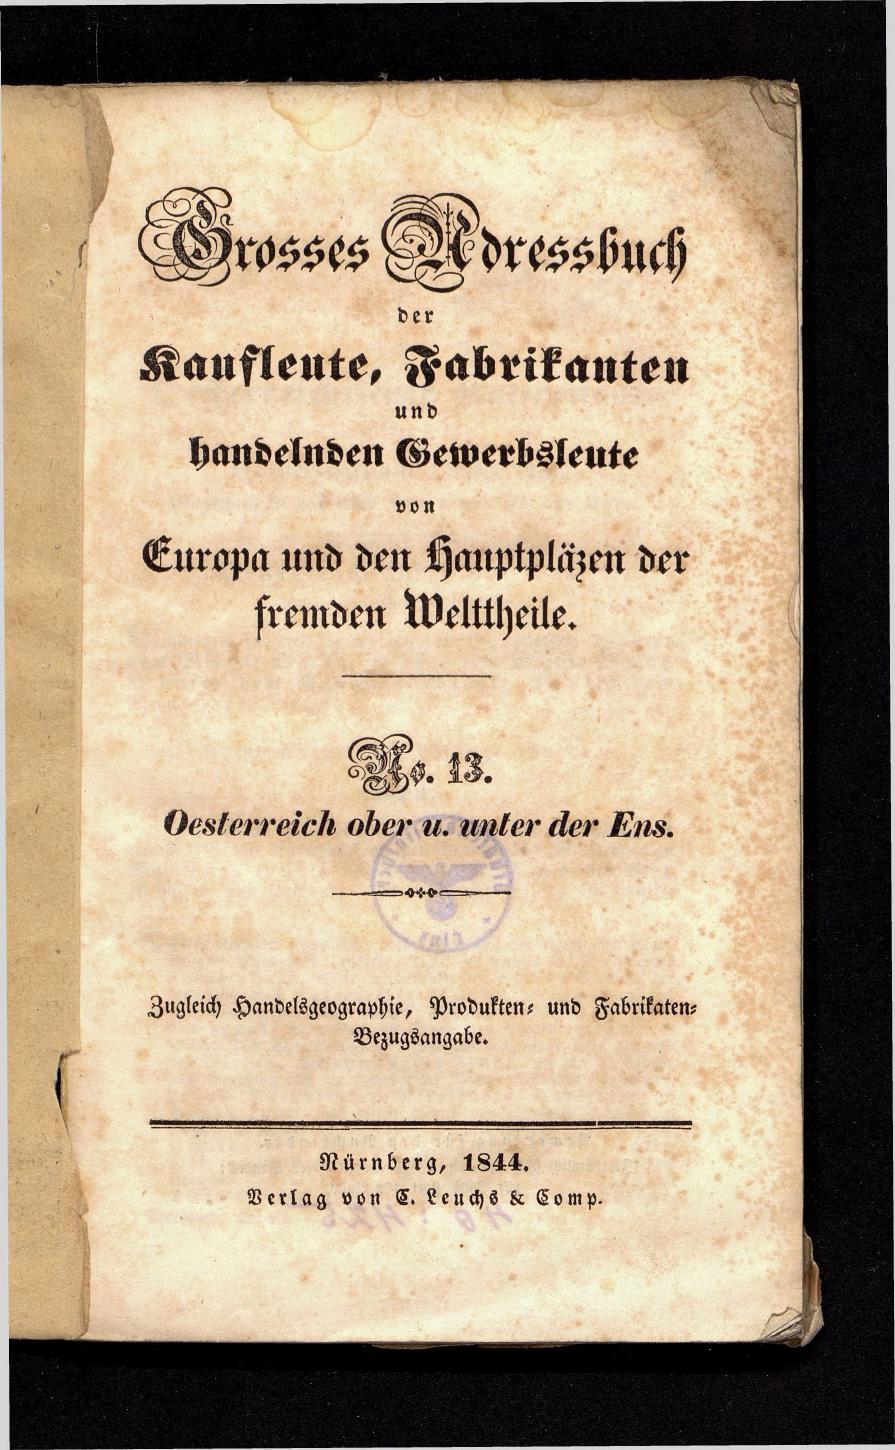 Grosses Adressbuch der Kaufleute. No. 13. Oesterreich ober u. unter der Enns 1844 - Seite 3